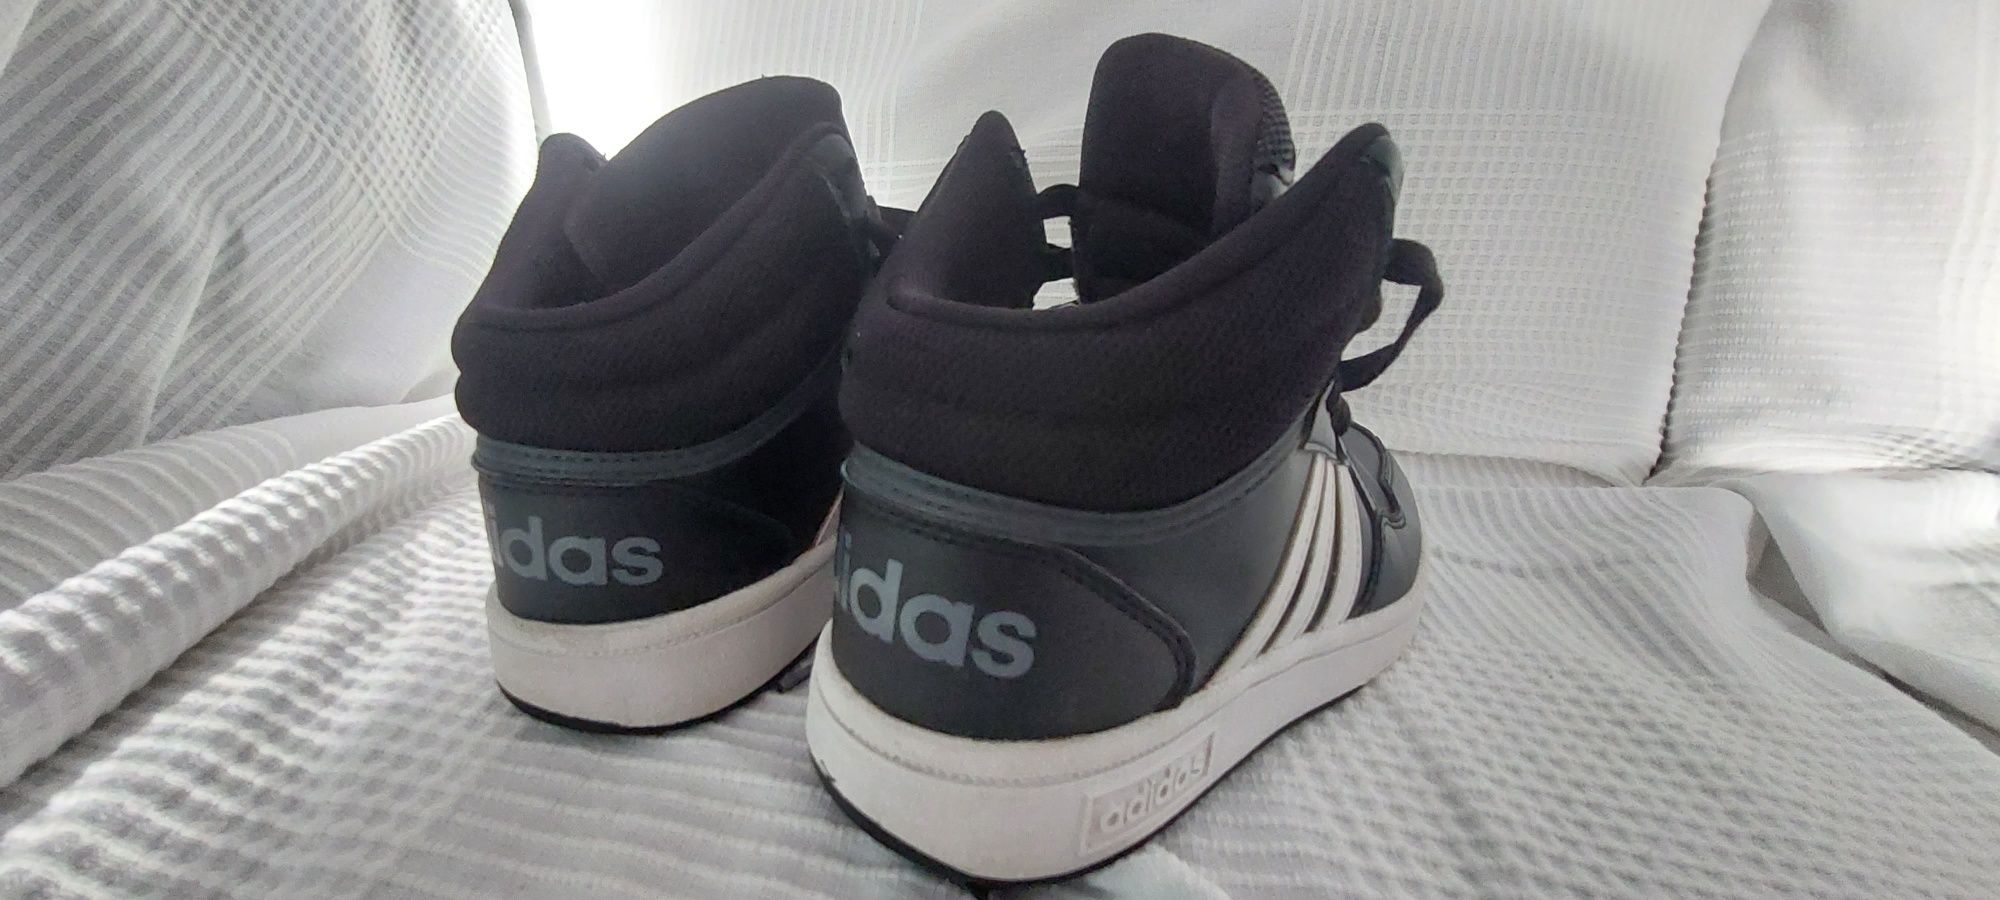 Adidasy,buty marki Adidas rozm.32, czarno-białe